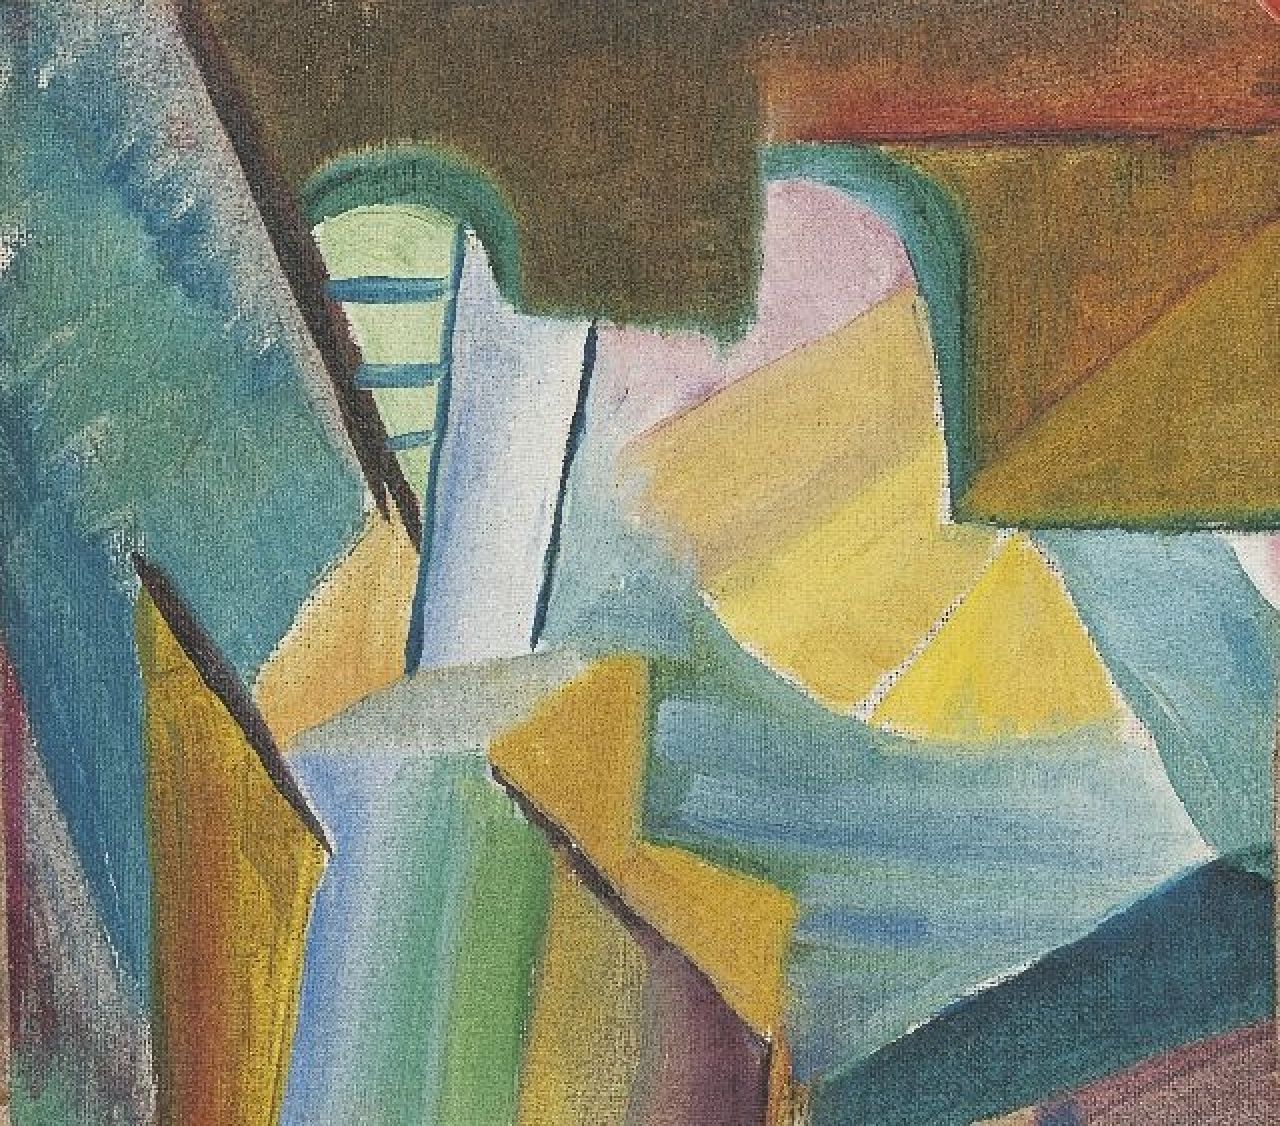 Freundlich O.  | Otto Freundlich, Compositie i.o., olieverf op doek 16,4 x 18,7 cm, te dateren 1928